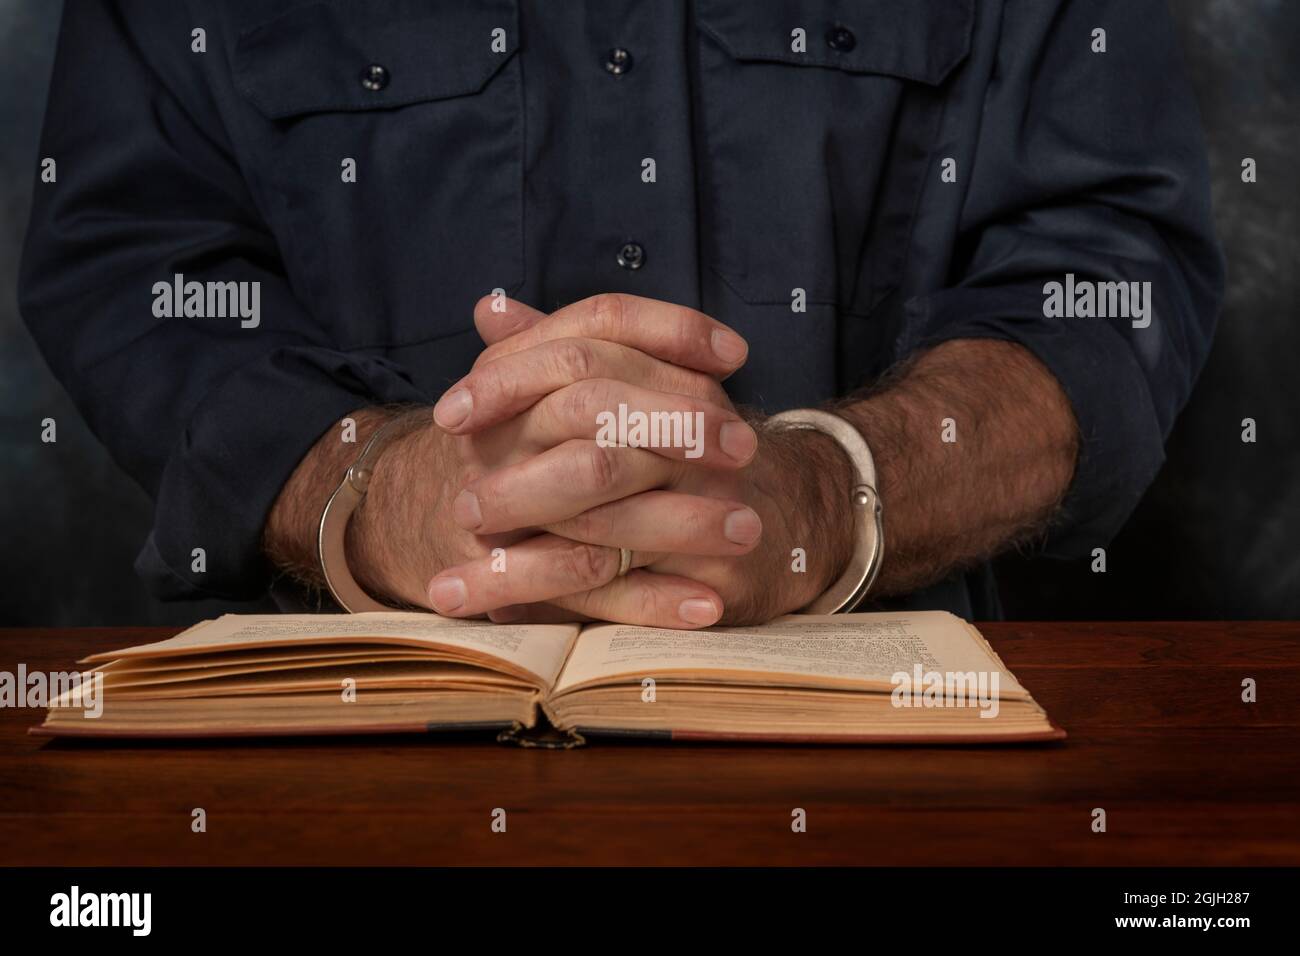 Un uomo arrestato e manicato con mani afflitto legge un libro sulla legge, sperando di trovare un modo per difendersi. Foto Stock